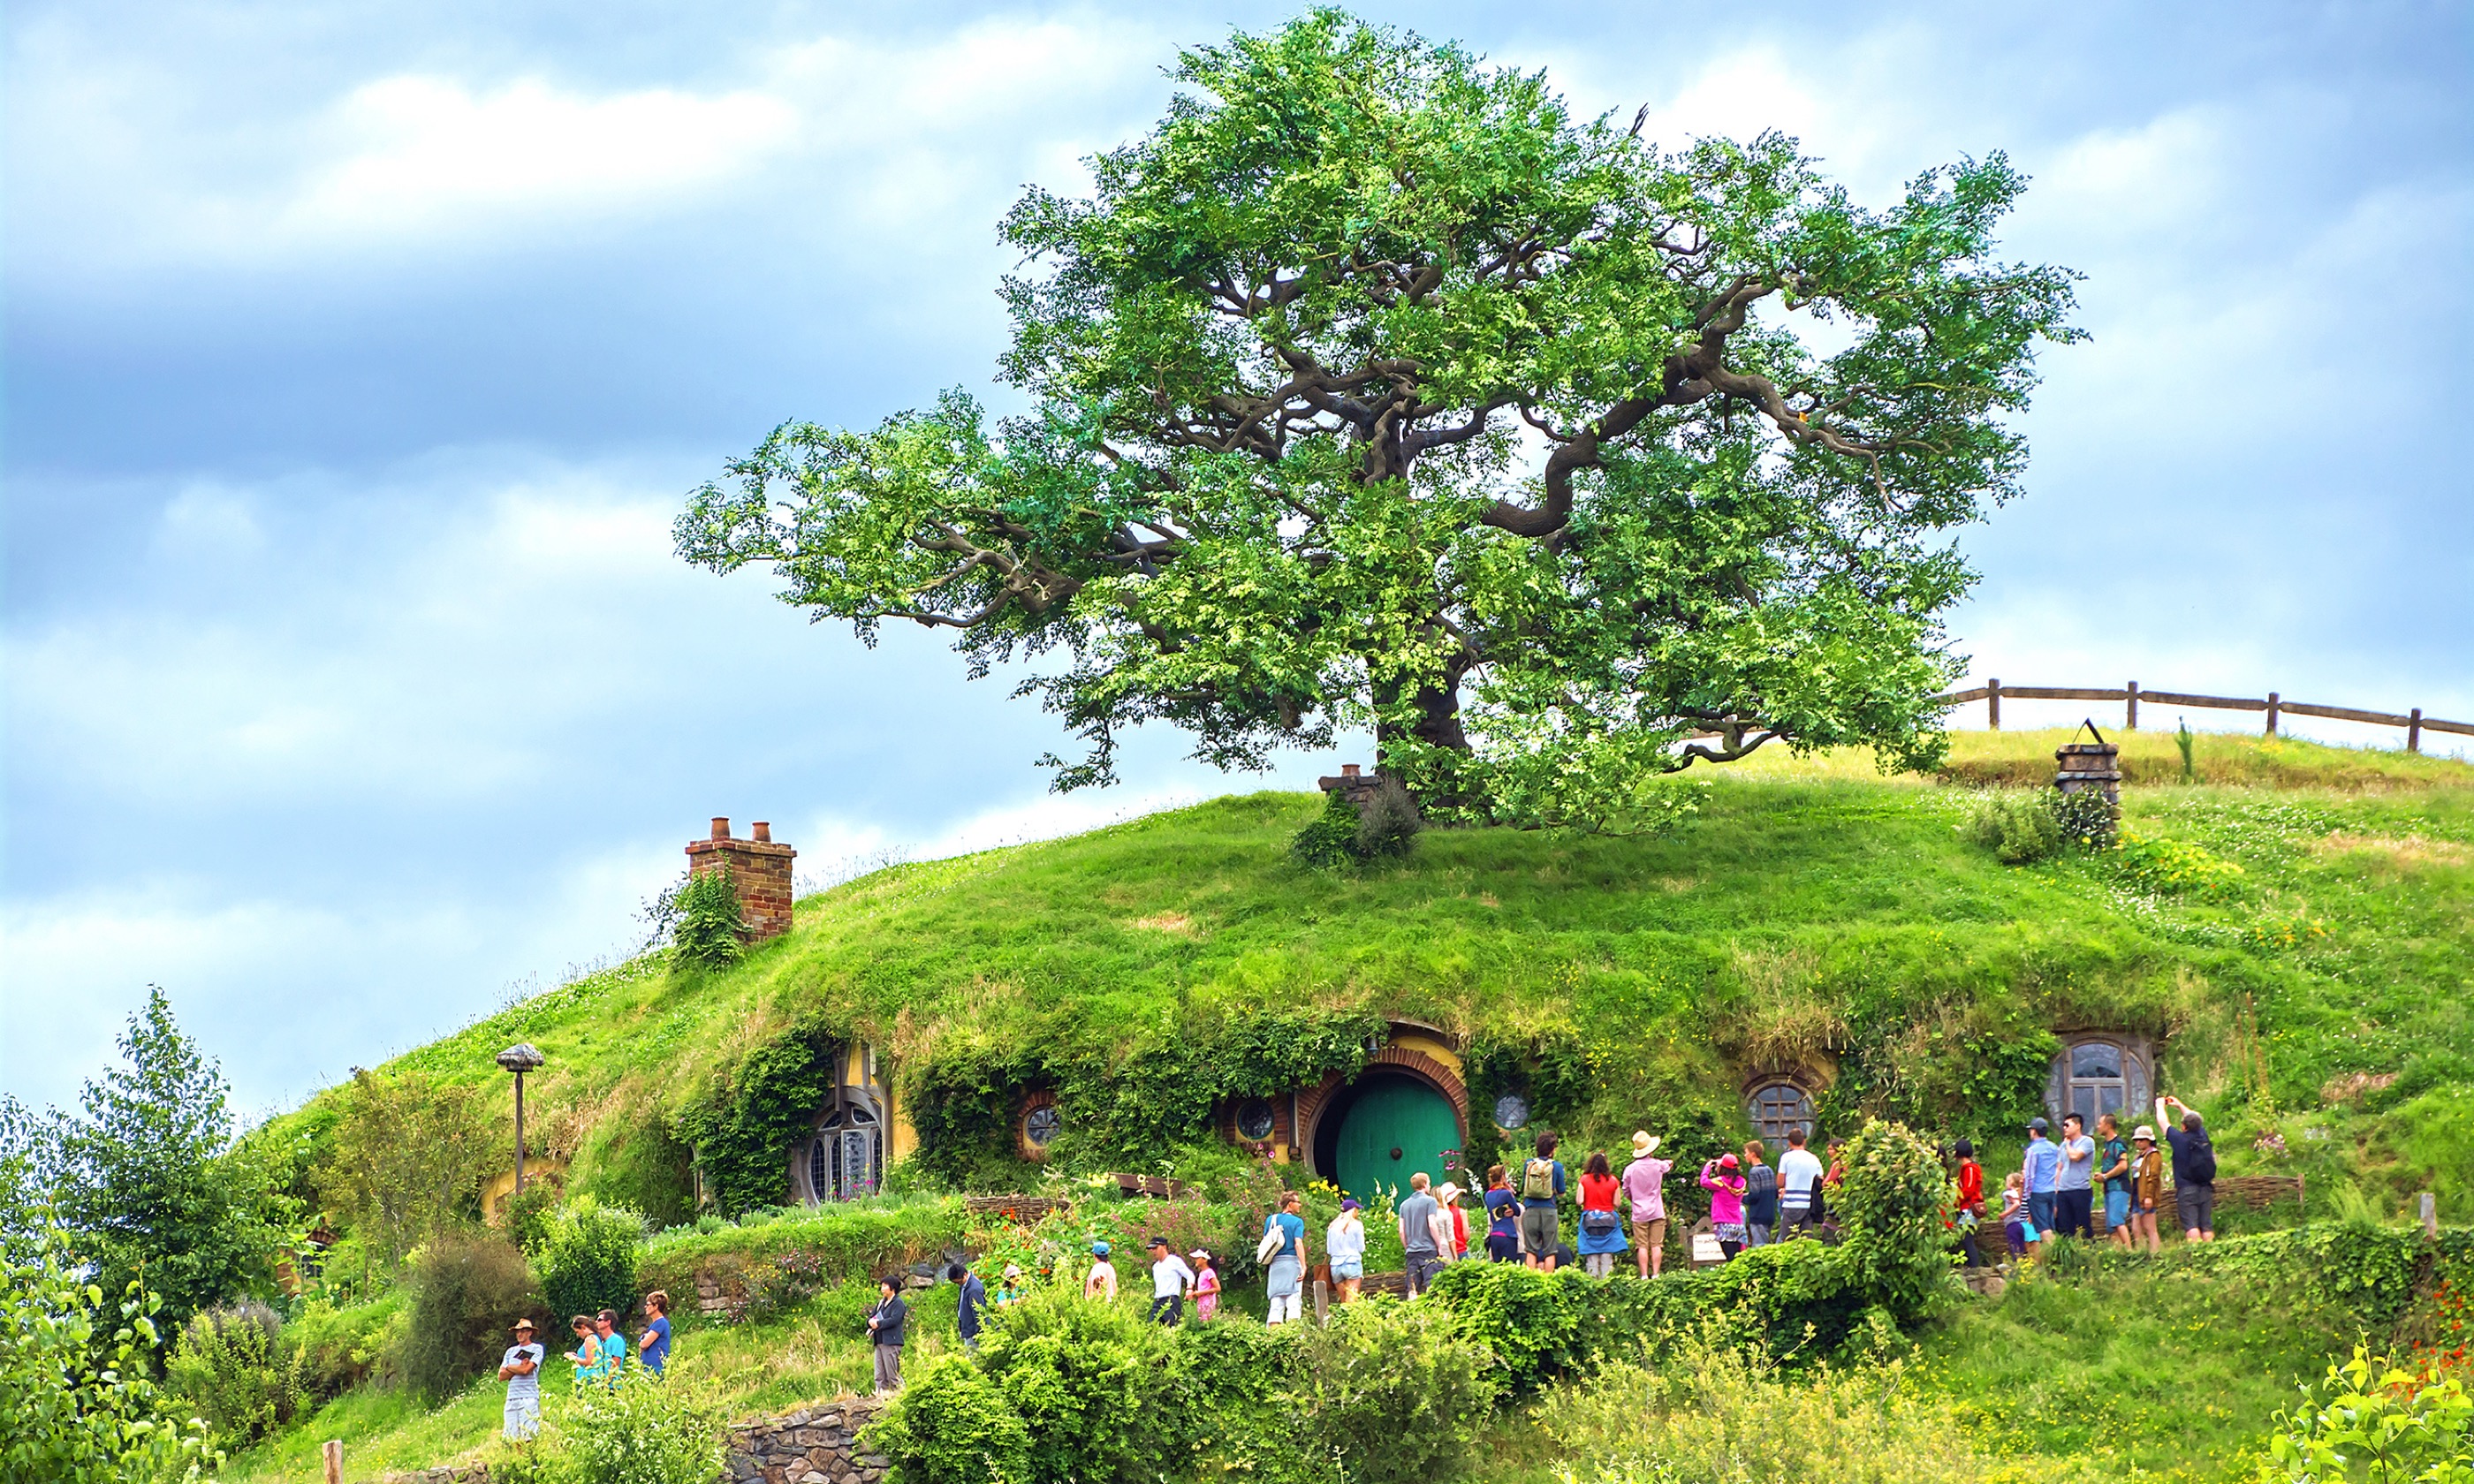 Hobbiton in Matamata (Shutterstock.com)